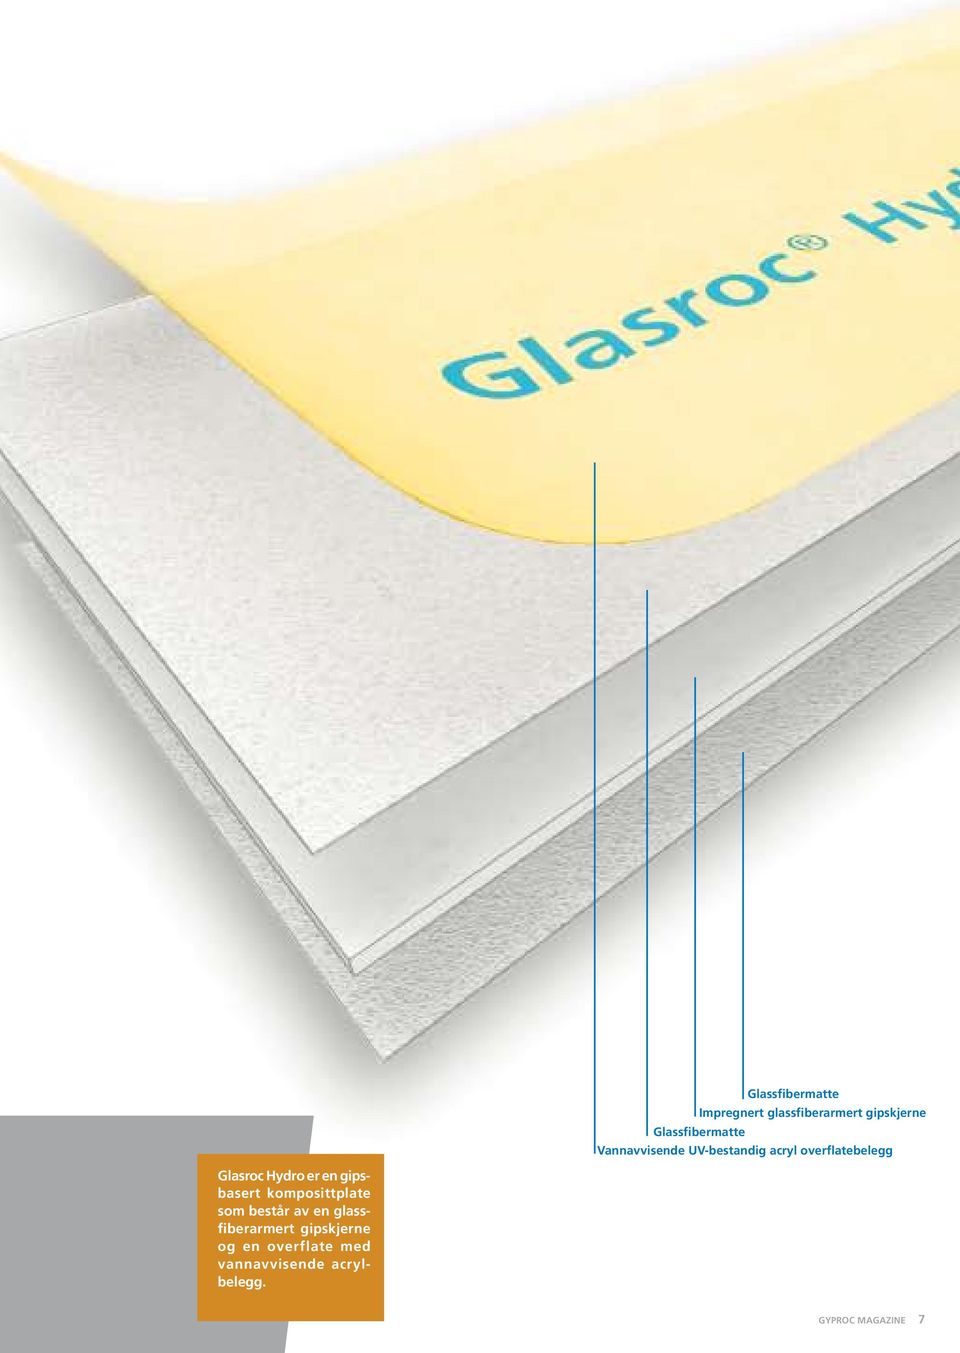 Glasroc Hydro er en gipsbasert komposittplate som består av en